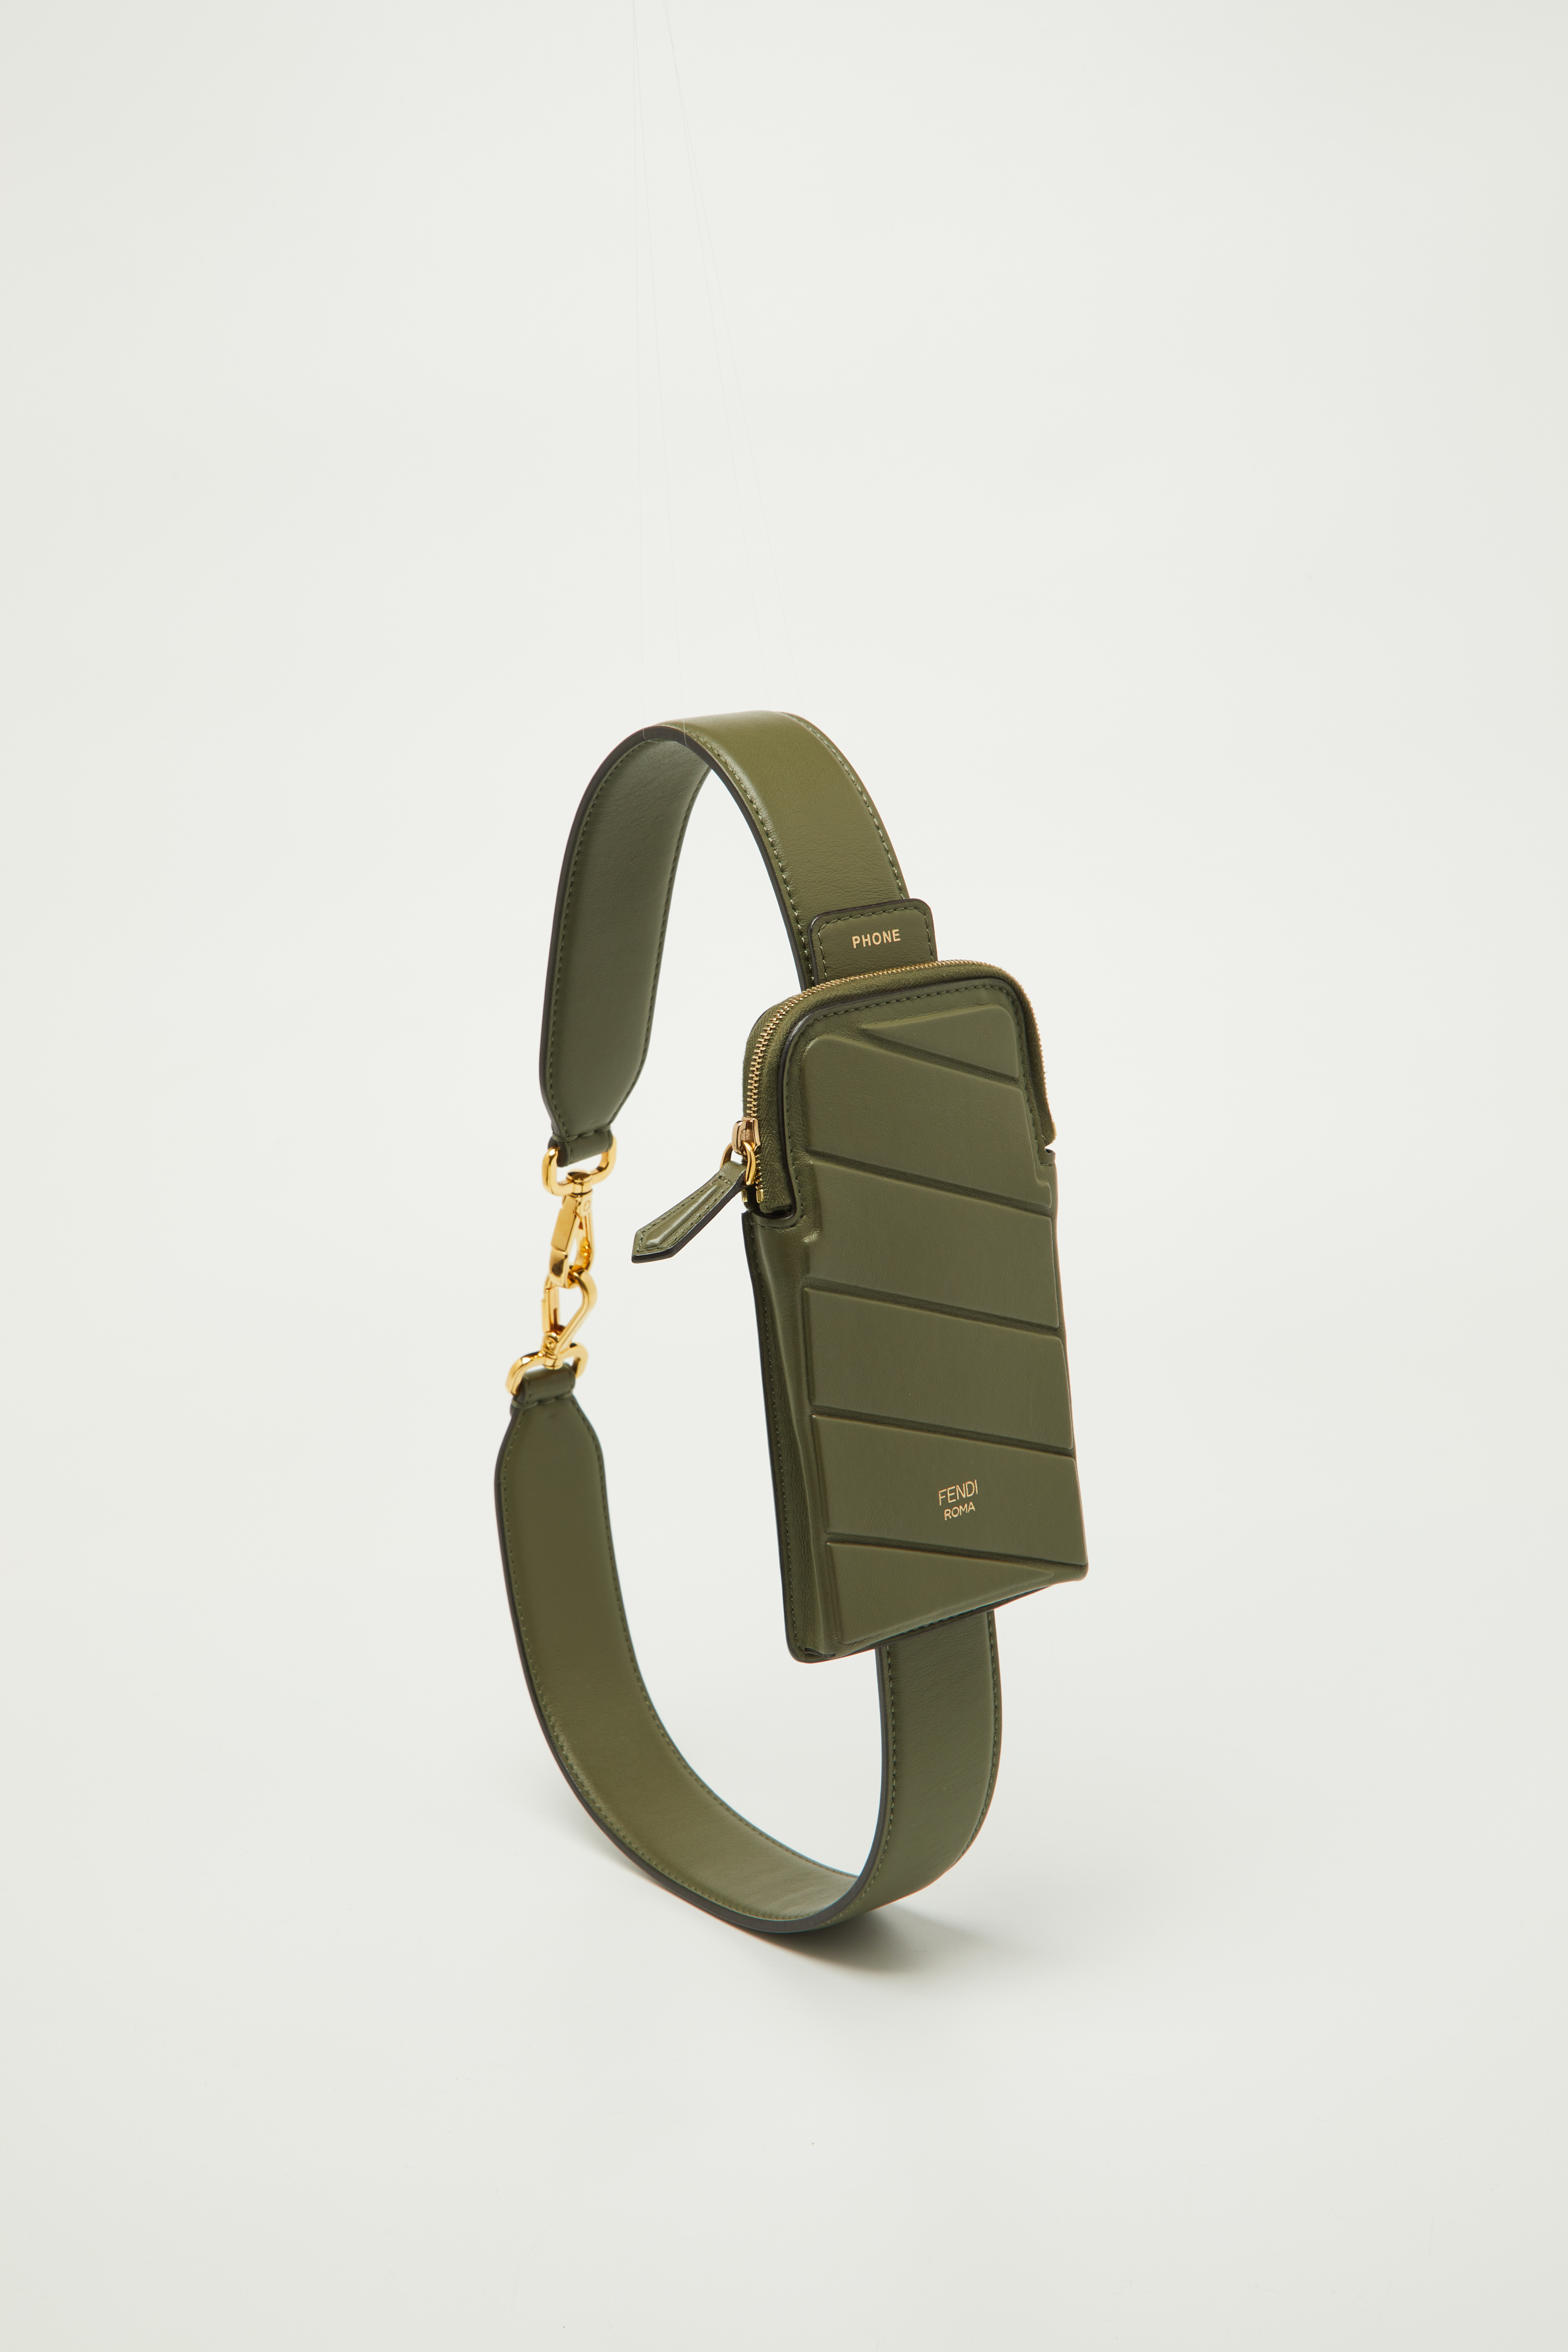 Fendi Olive Green Leather Cell Pocket Bag Strap